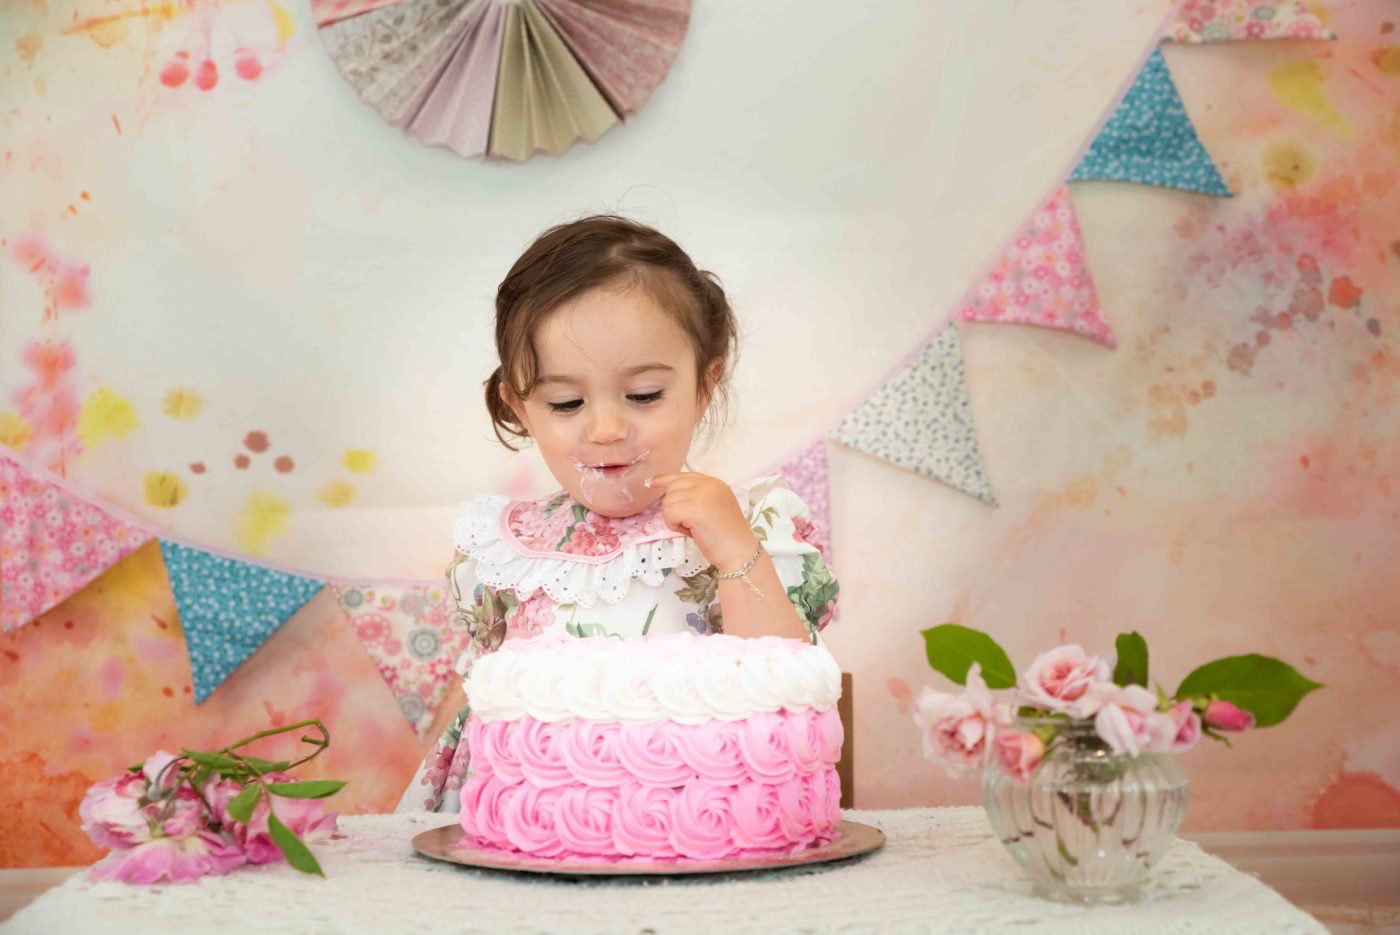 shooting photo bébé 1 an et son gâteau d'anniversaire photographe bébé gap